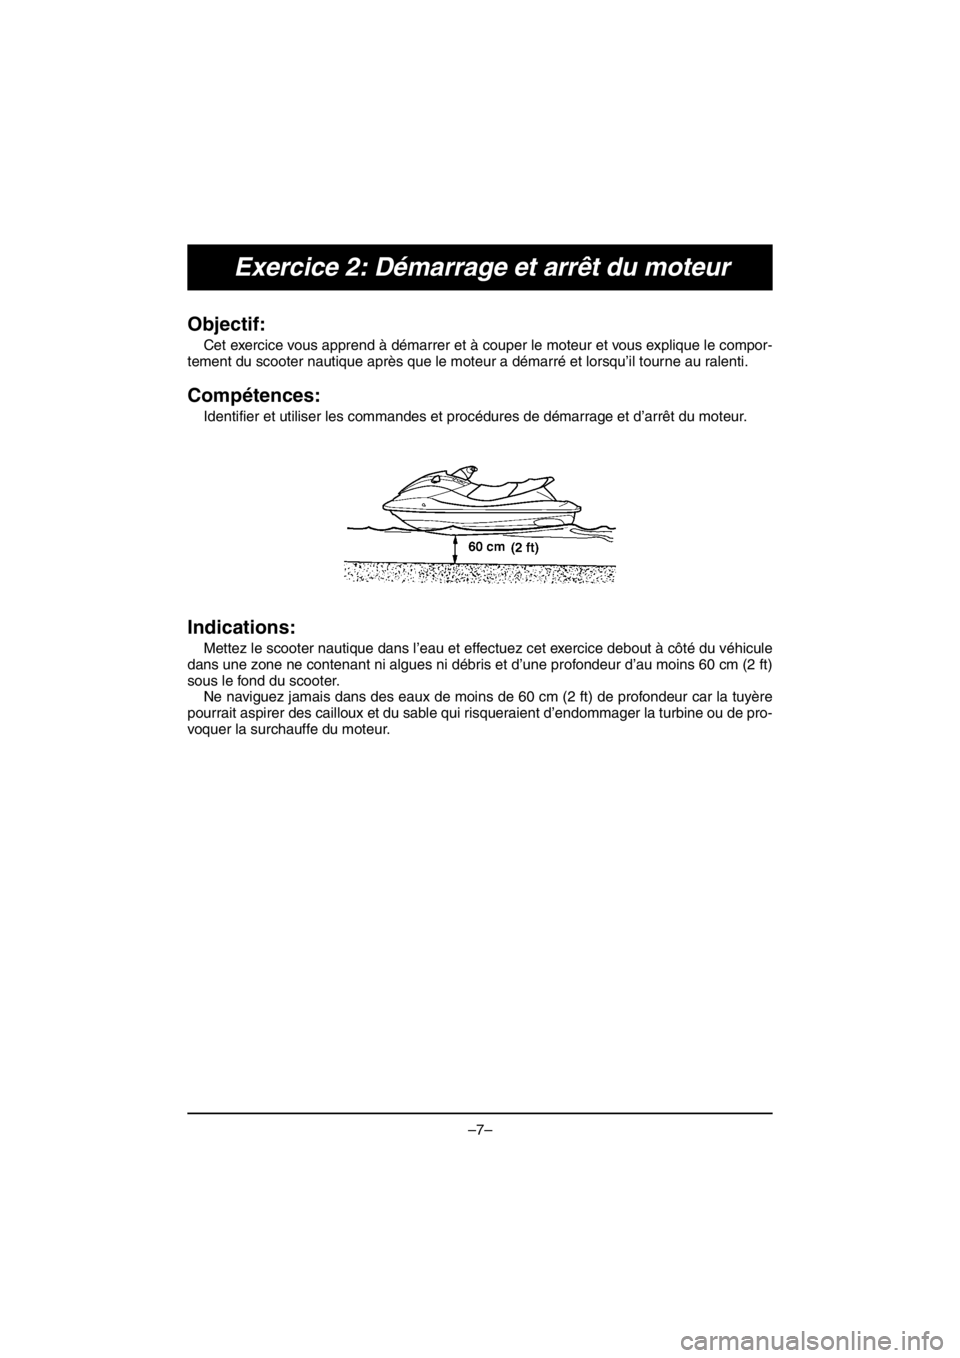 YAMAHA EX DELUXE 2017  Manuale duso (in Italian) –7–
Exercice 2: Démarrage et arrêt du moteur
Objectif: 
Cet exercice vous apprend à démarrer et à couper le moteur et vous explique le compor-
tement du scooter nautique après que le moteur 